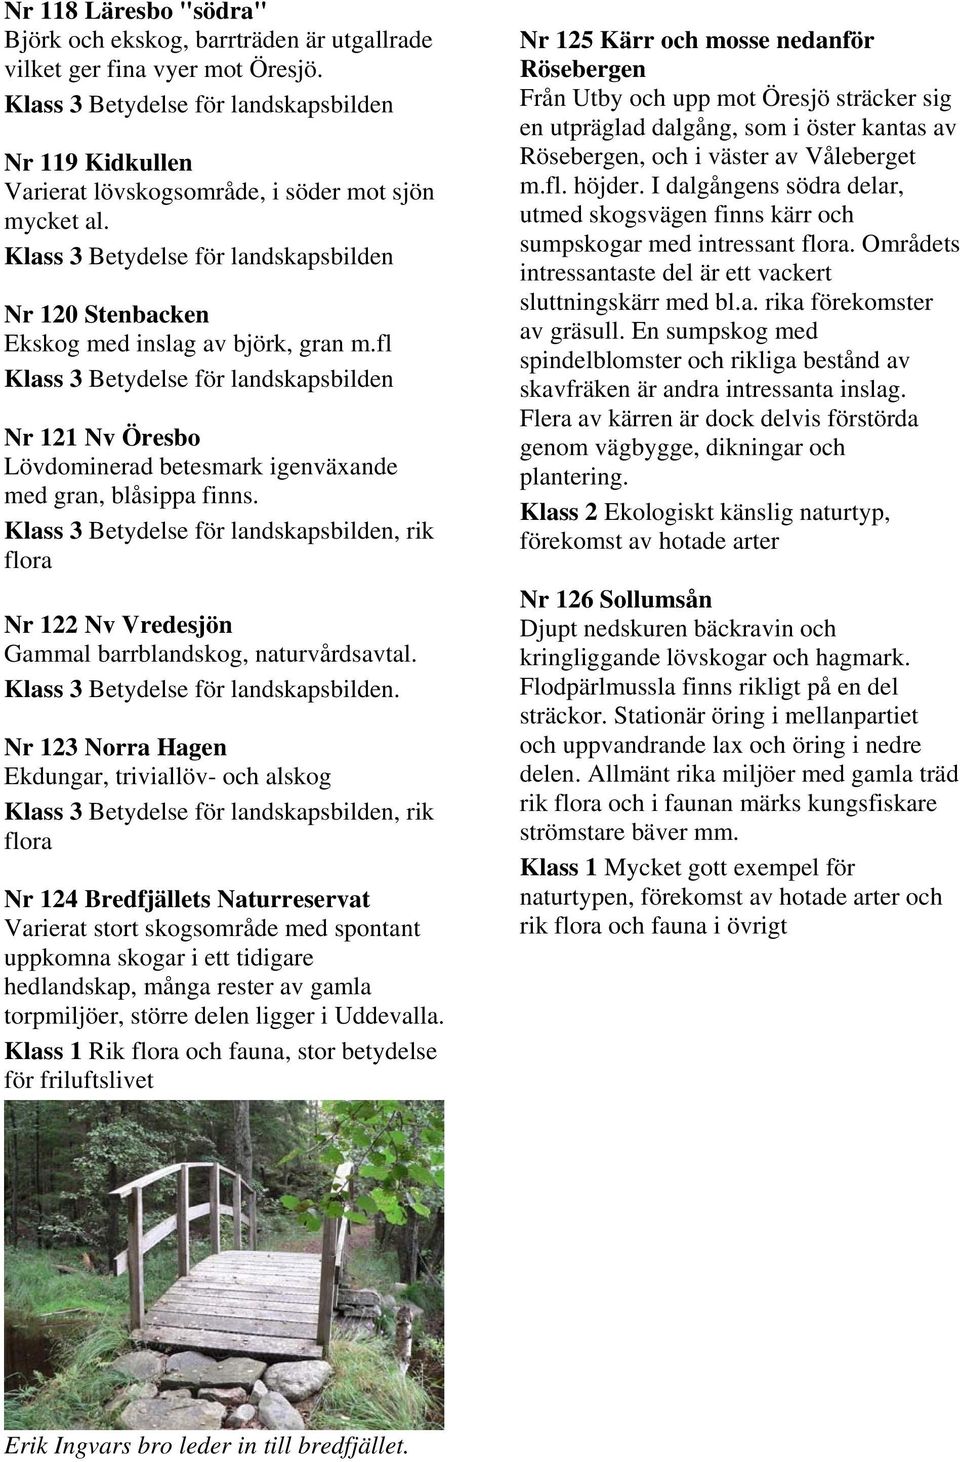 . Nr 123 Norra Hagen Ekdungar, triviallöv- och alskog, rik Nr 124 Bredfjällets Naturreservat Varierat stort skogsområde med spontant uppkomna skogar i ett tidigare hedlandskap, många rester av gamla